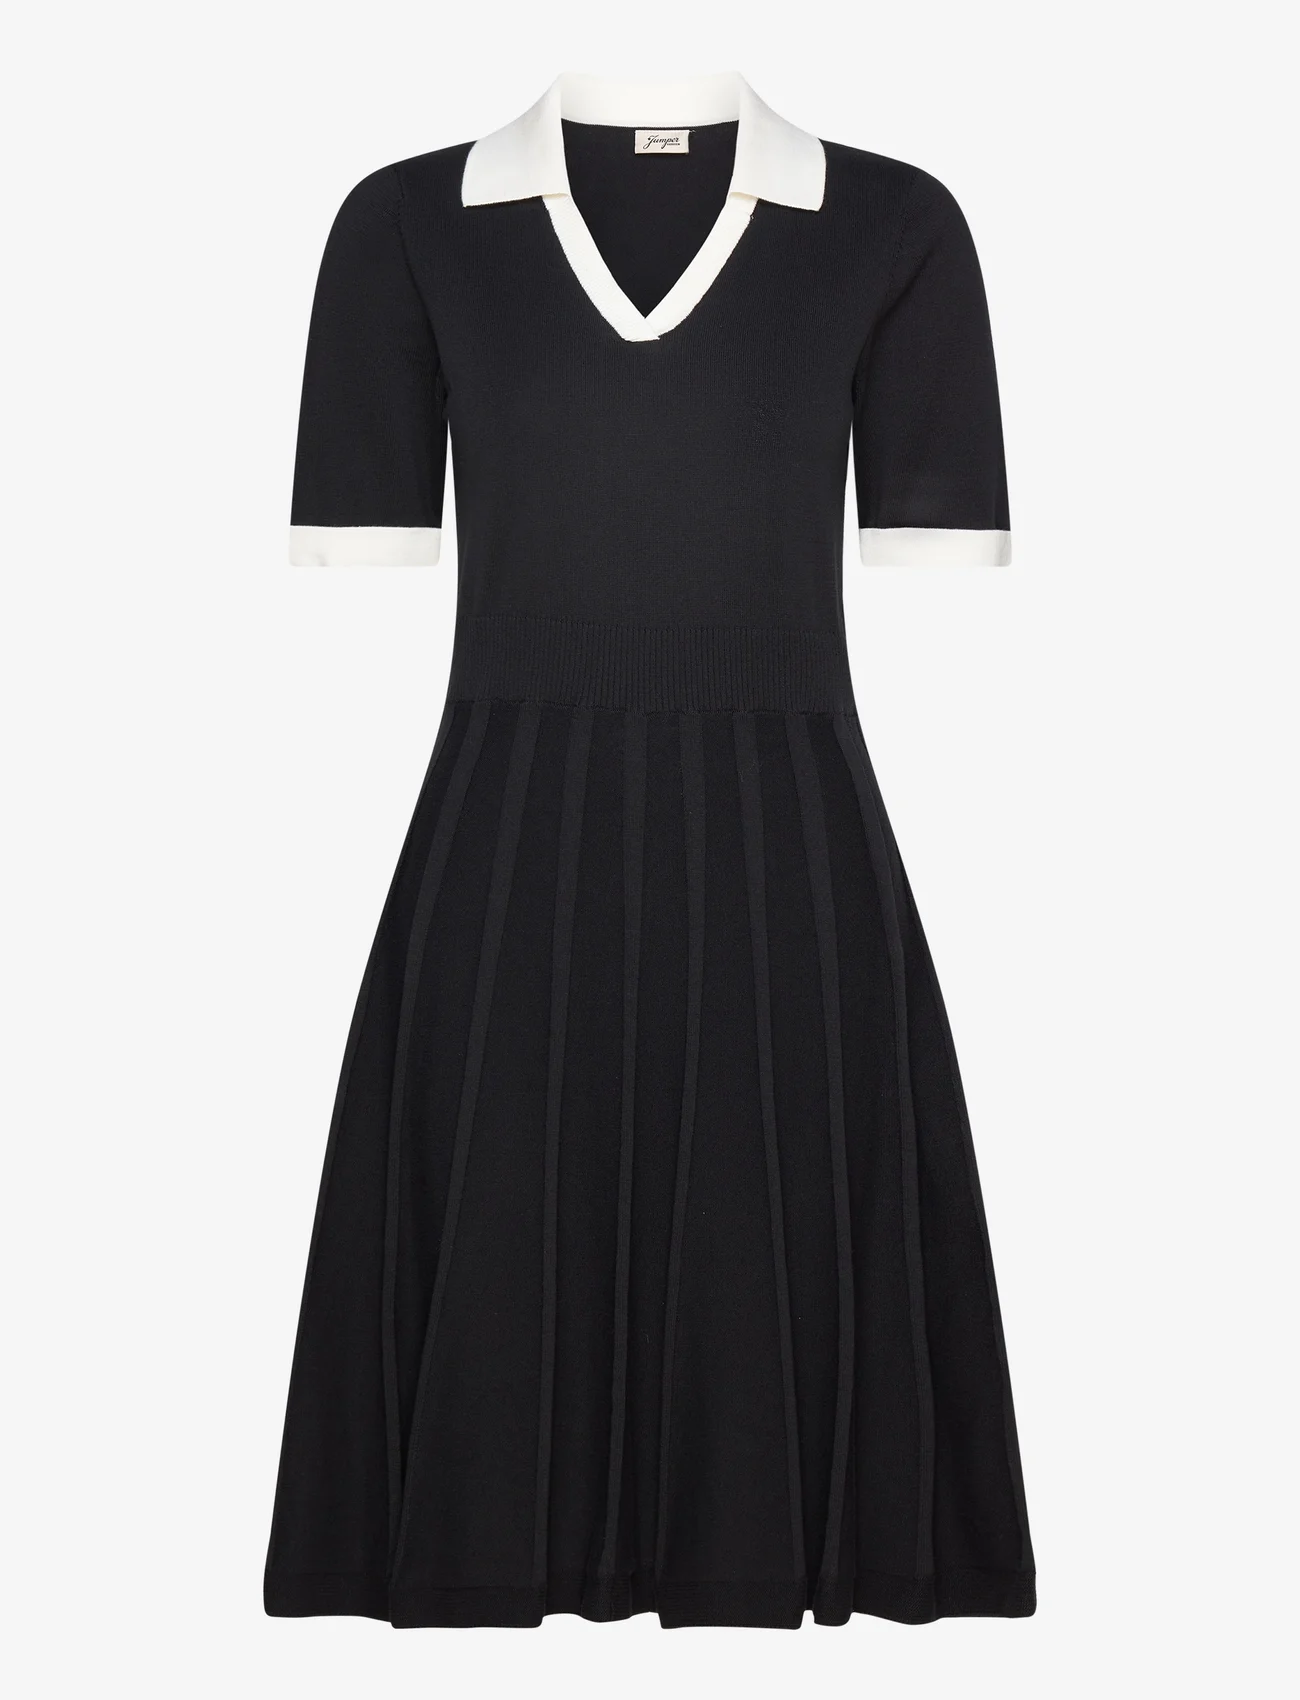 Jumperfabriken - Mallory - strikkede kjoler - black - 0